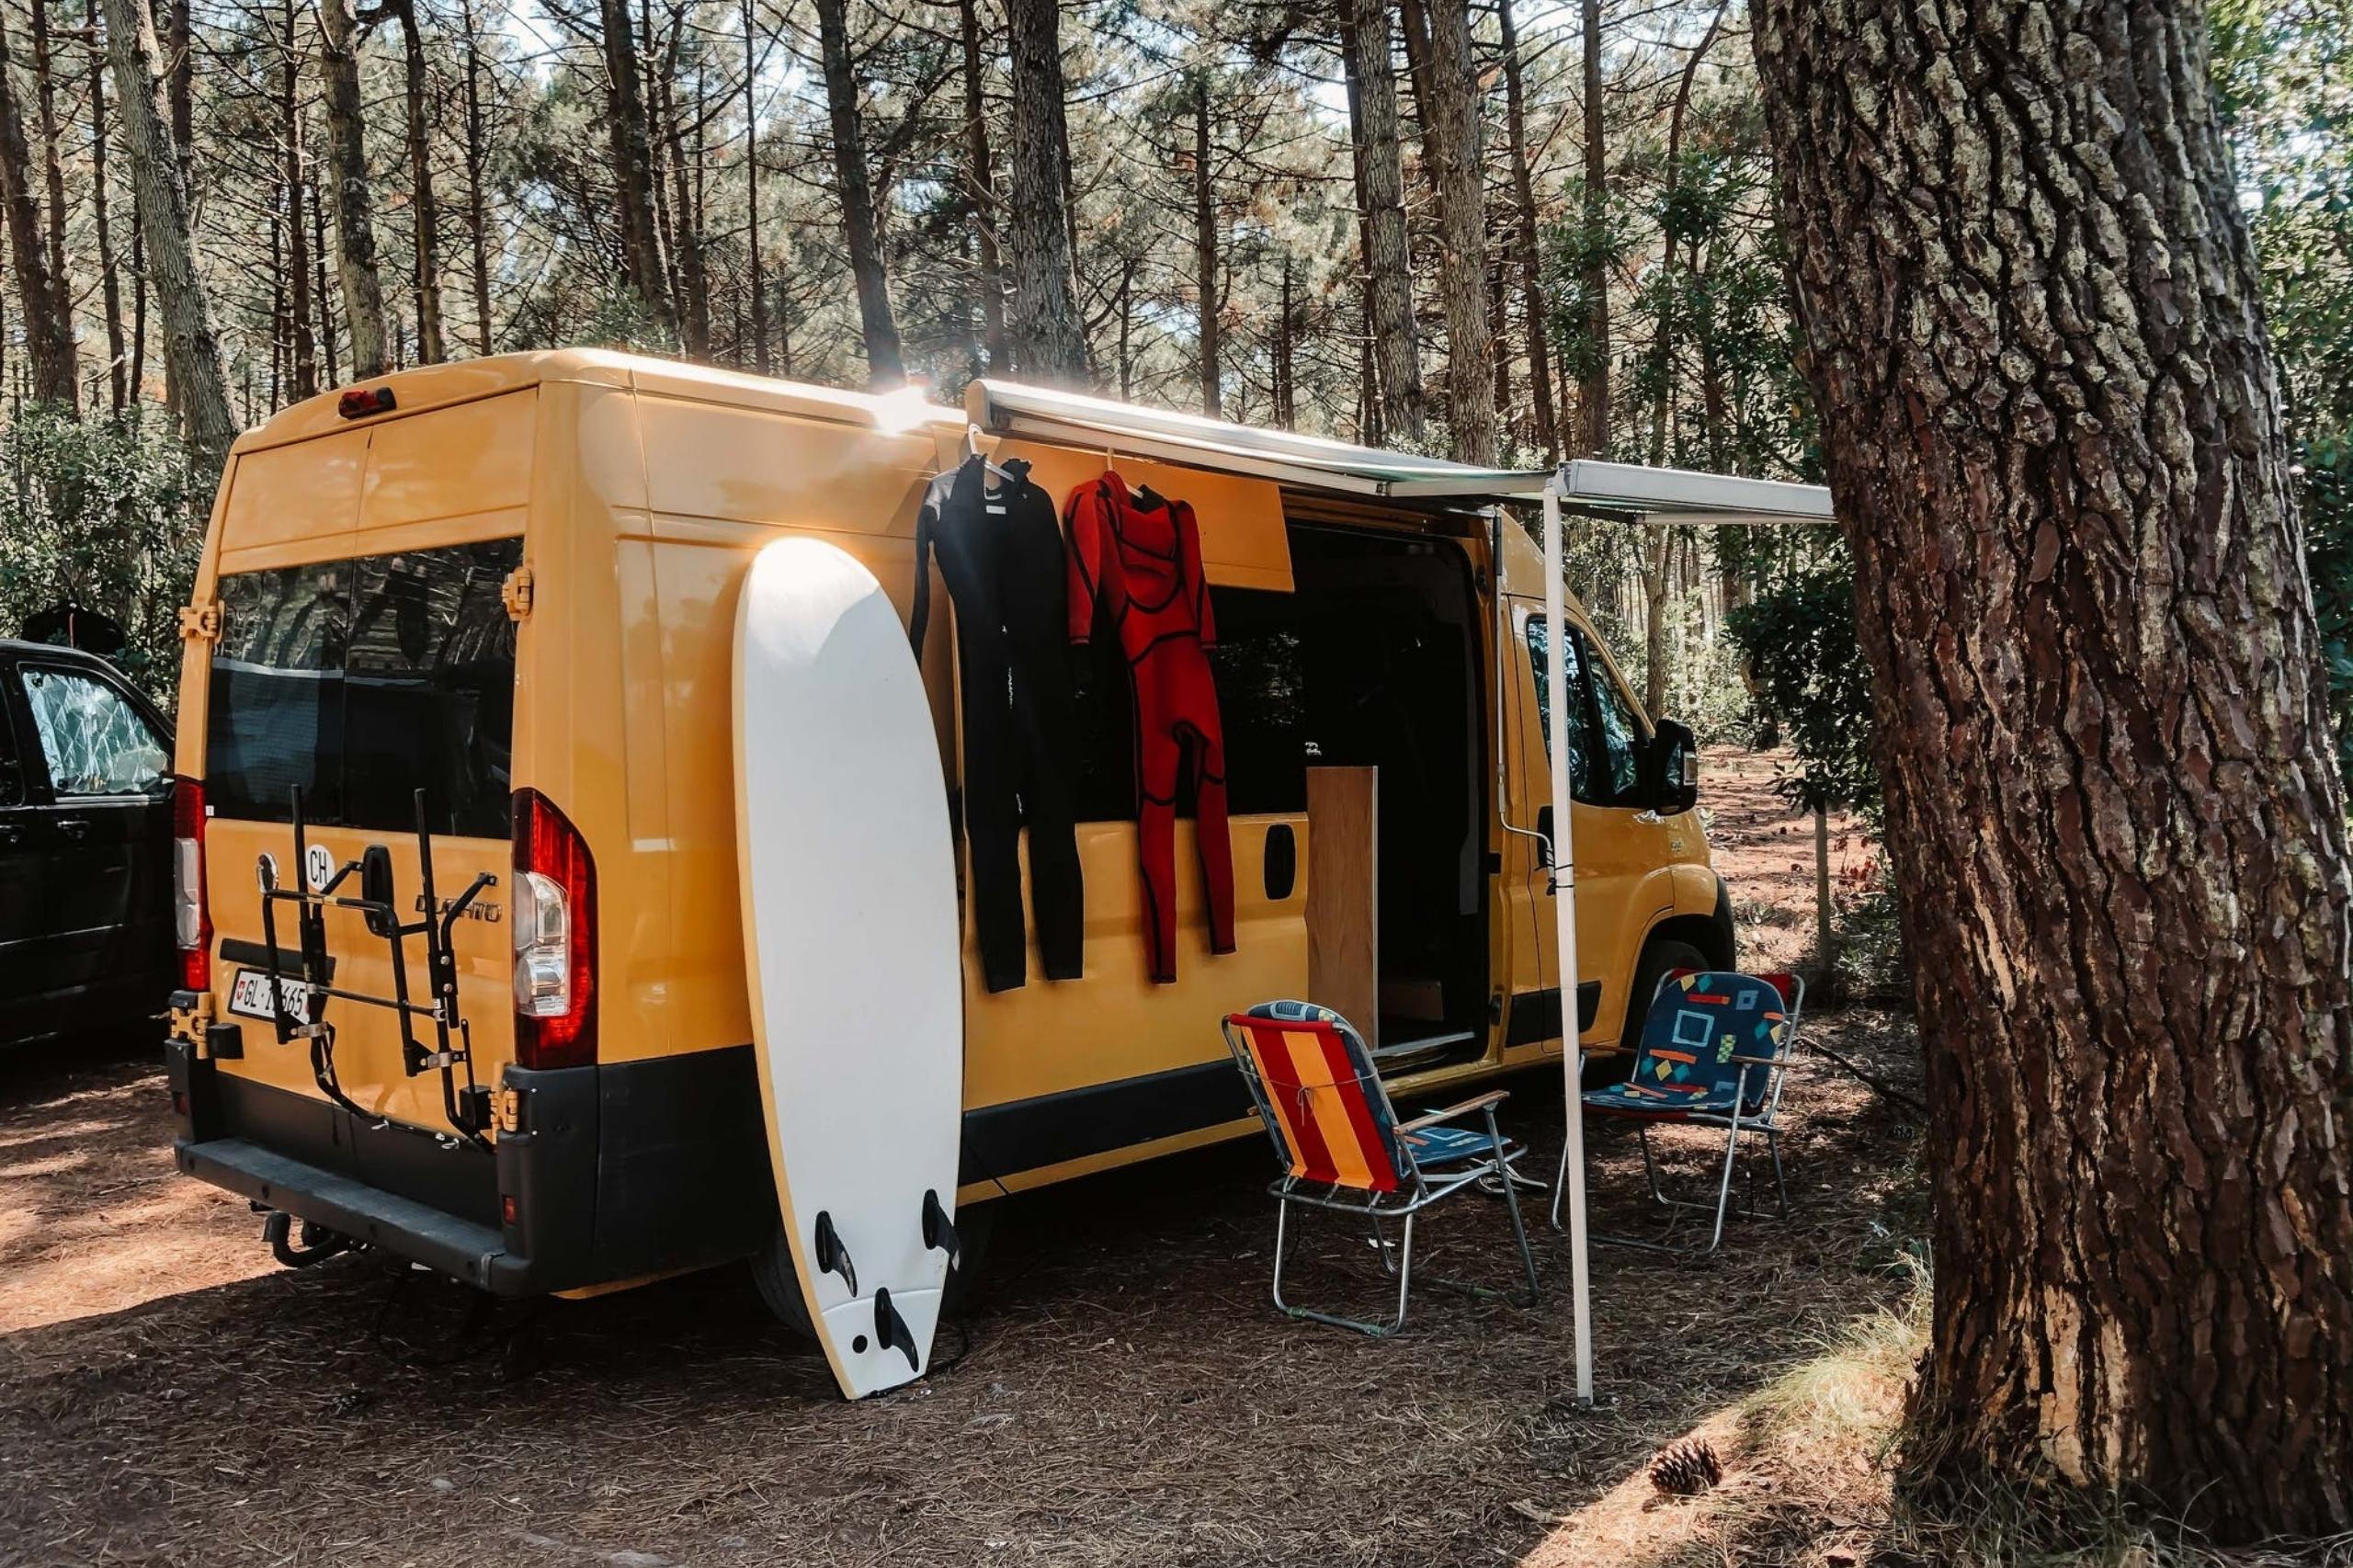 Das sind die 15 besten Camping Gadgets – MyCamper